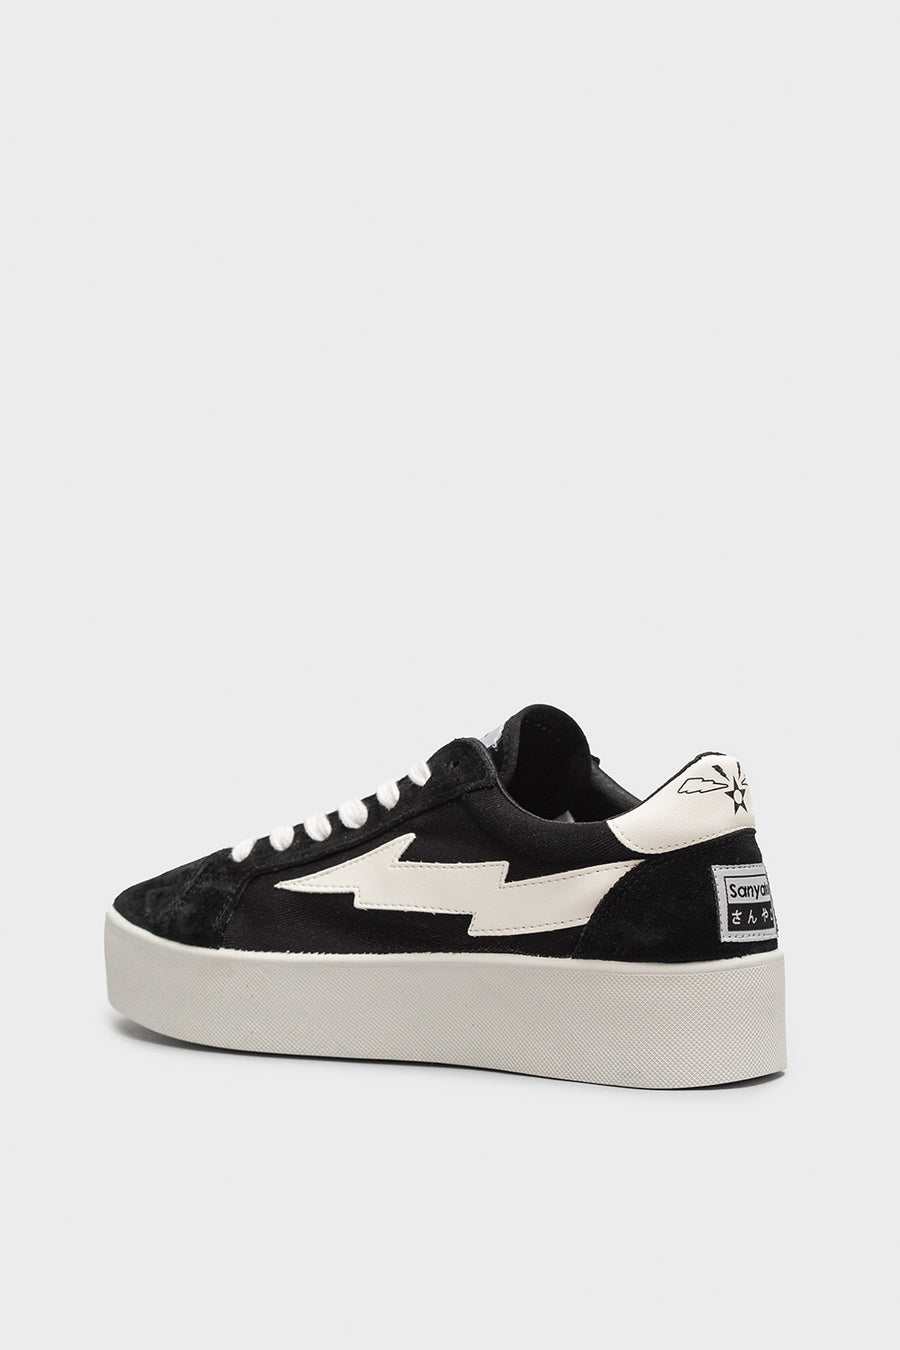 Sneakers Sanyako in tessuto nero e bianco thuw002